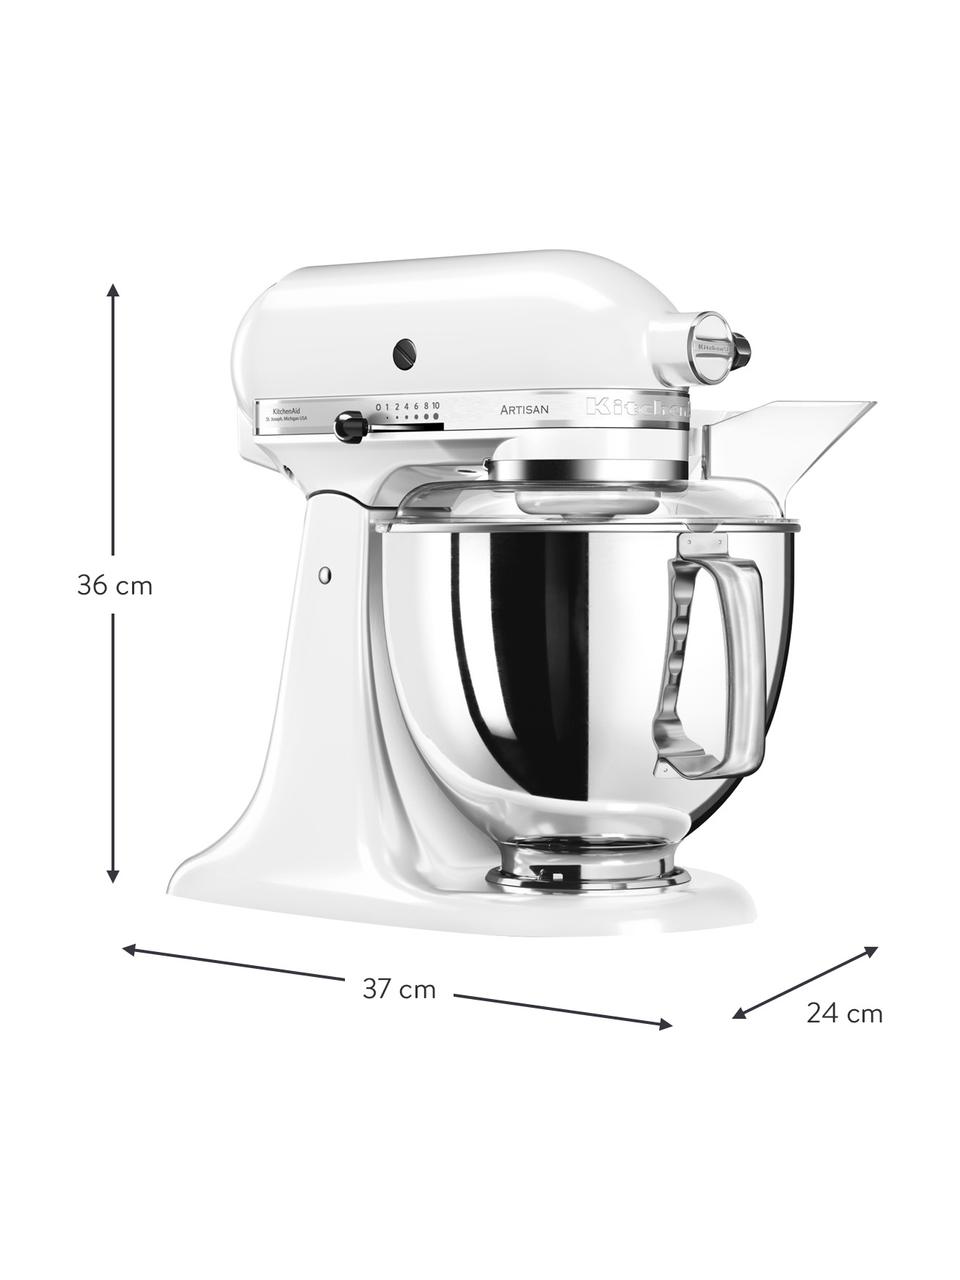 Küchenmaschine Artisan in Weiß, Gehäuse: Zinkdruckguss, Schüssel: Edelstahl, Weiß, glänzend, B 37 x H 36 cm